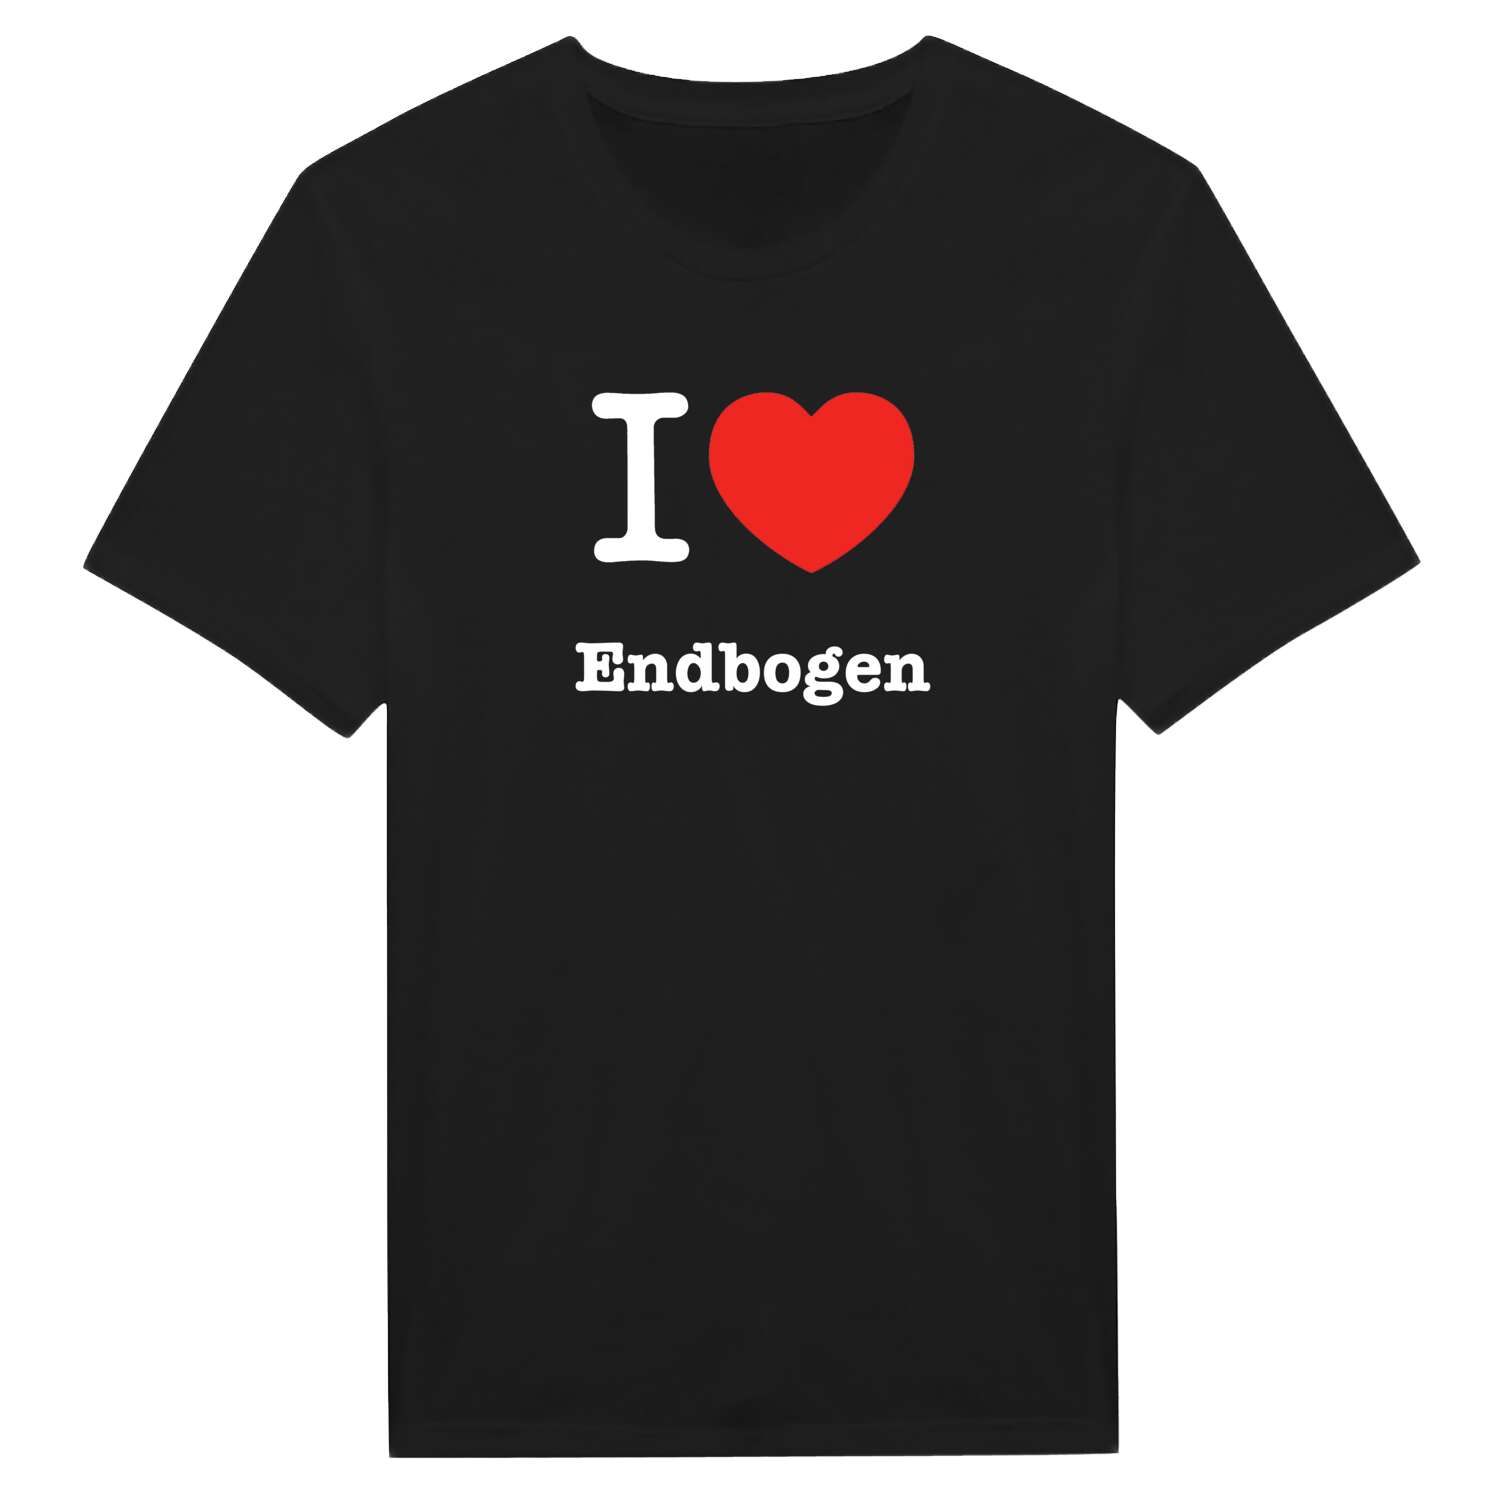 Endbogen T-Shirt »I love«